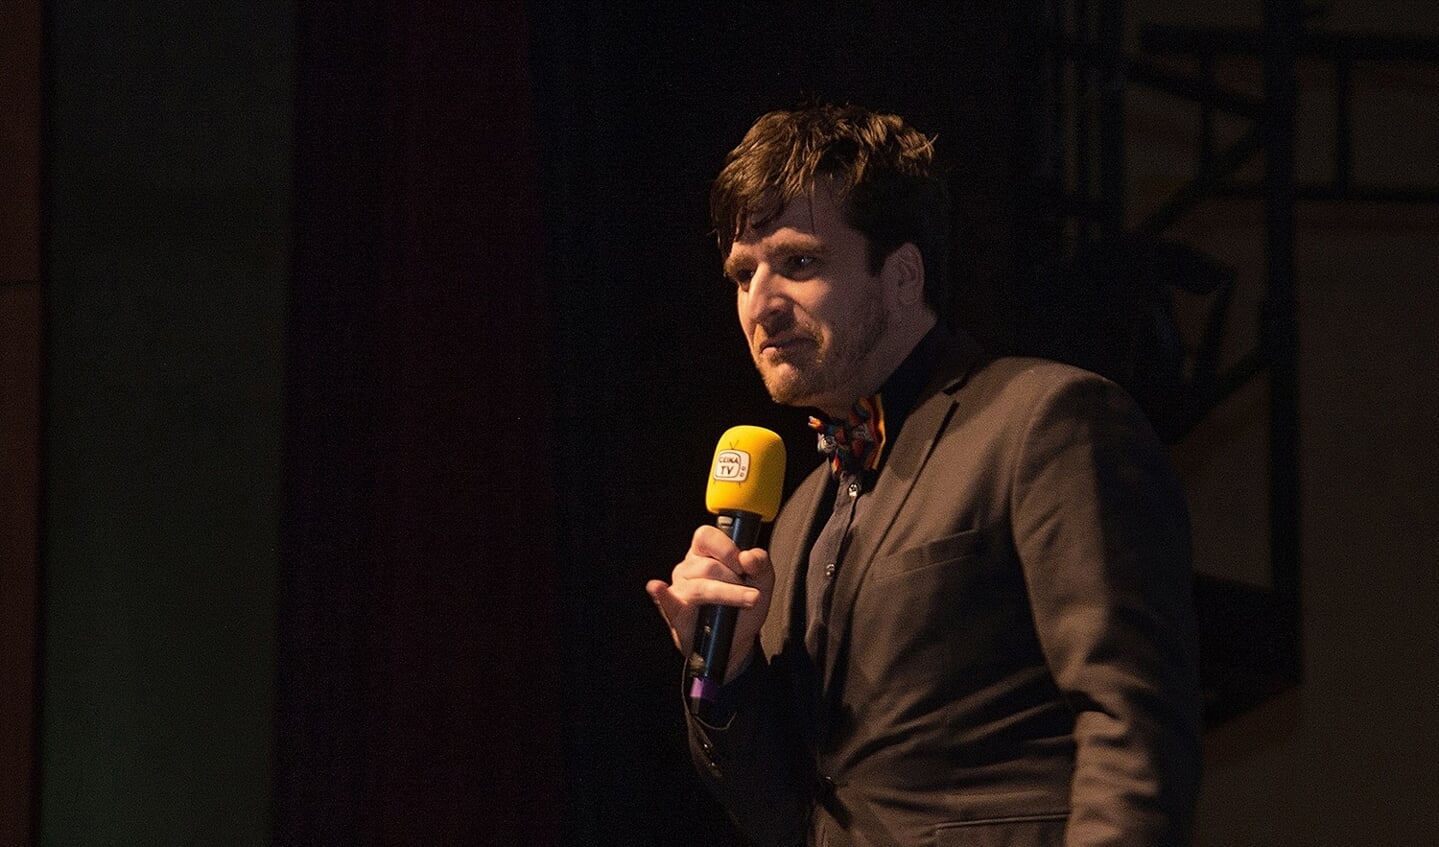 Oscar Kocken (presentator/theatermaker).